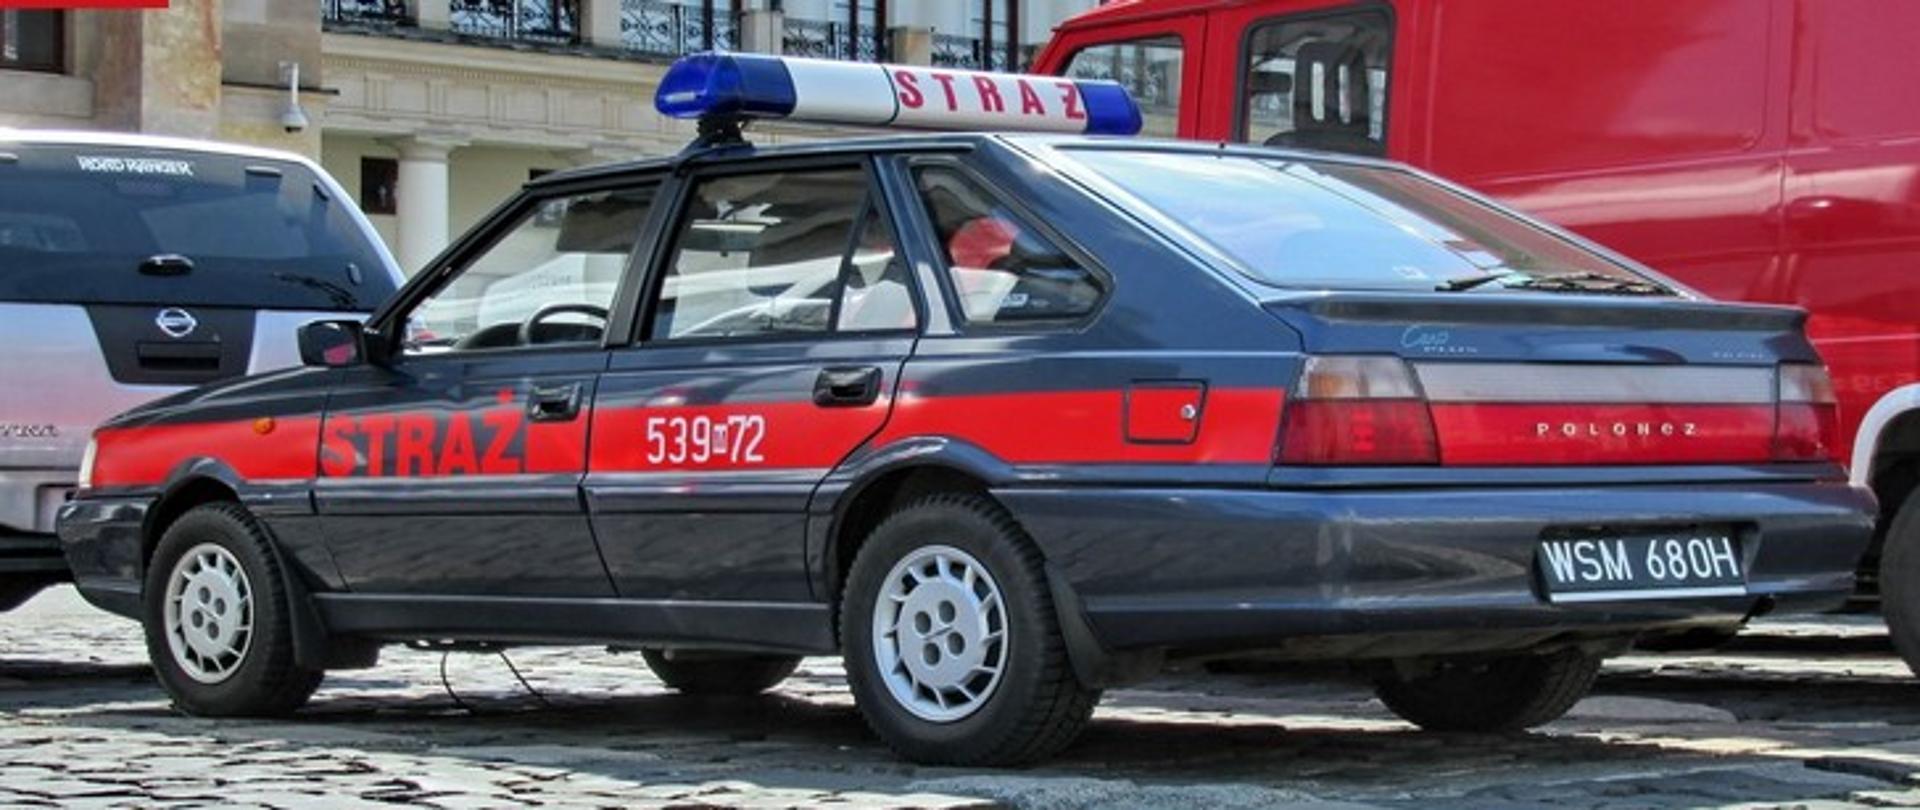 Zdjęcie przedstawia strażacki samochód osobowy Polonez, w kolorze grafitowym, z czerwonym napisem STRAŻ.